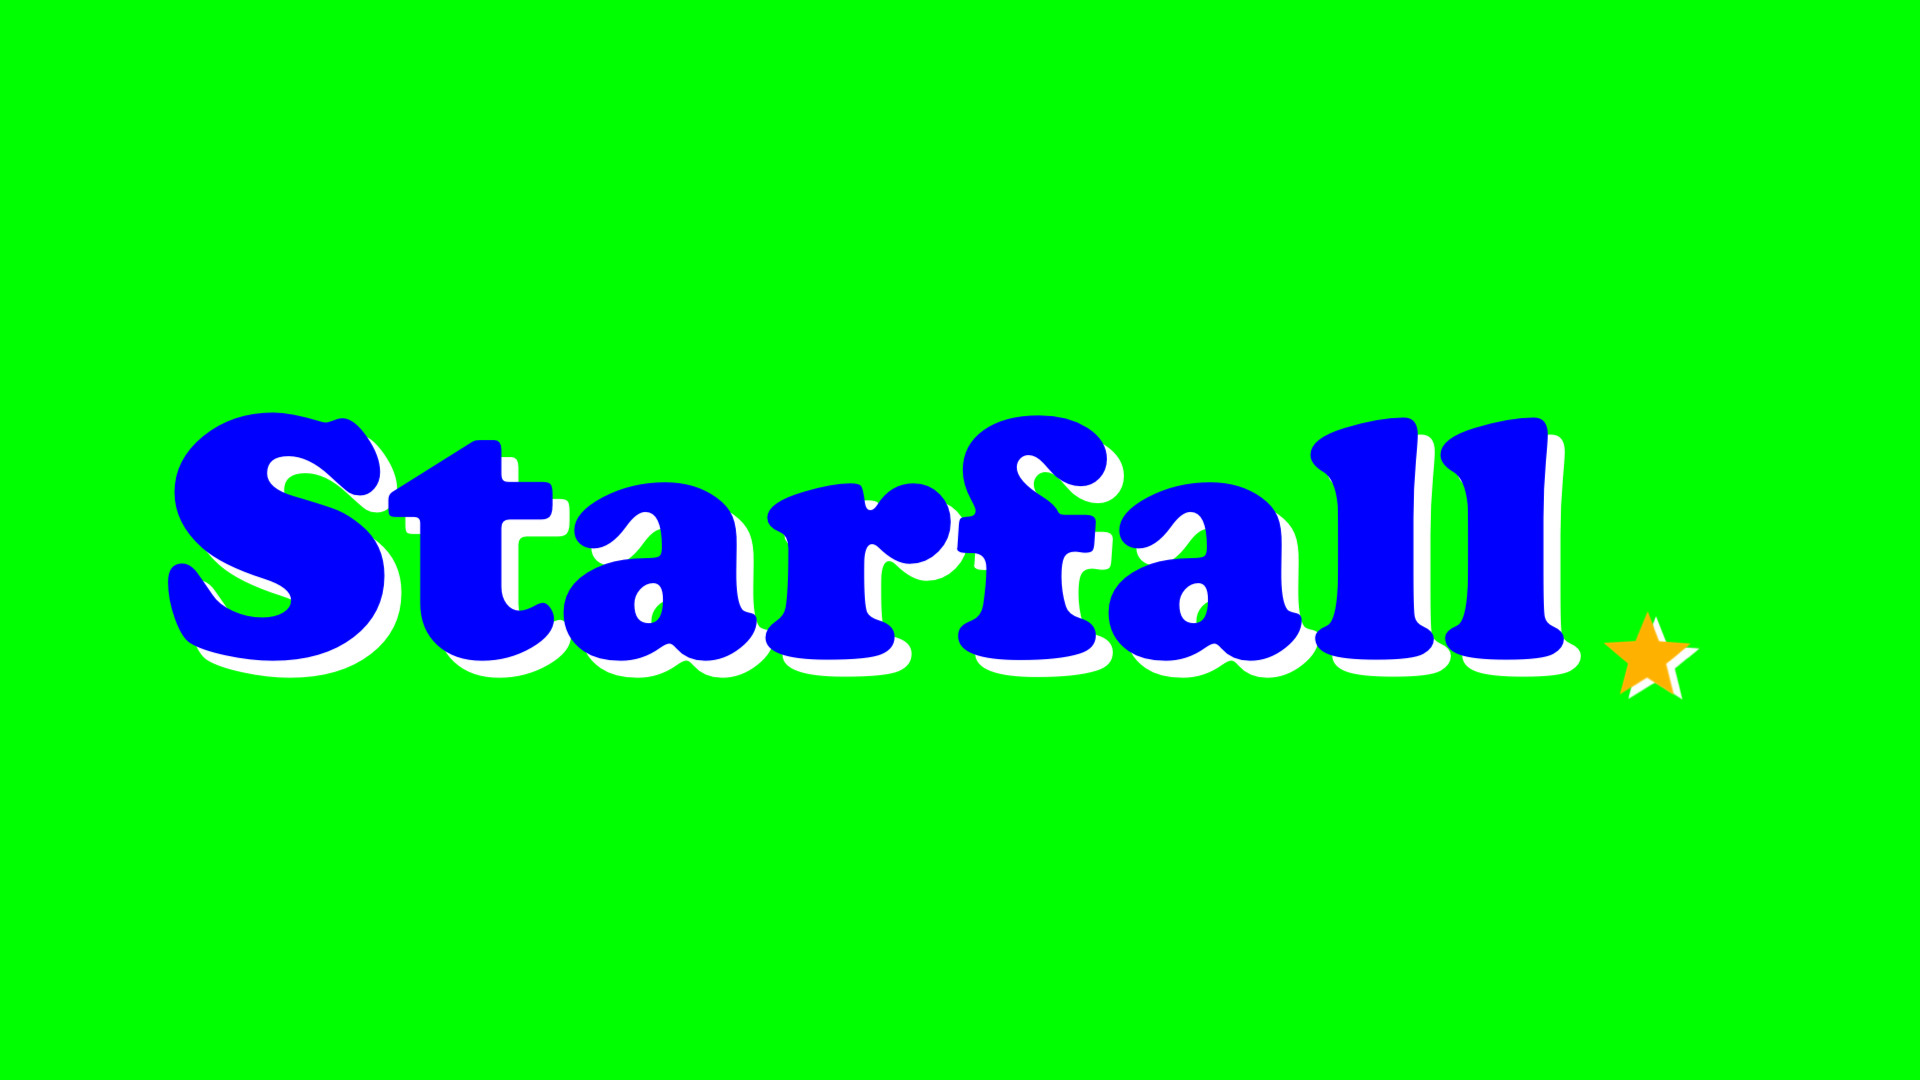 Starfall logo (2002-present) by Charlieaat on DeviantArt